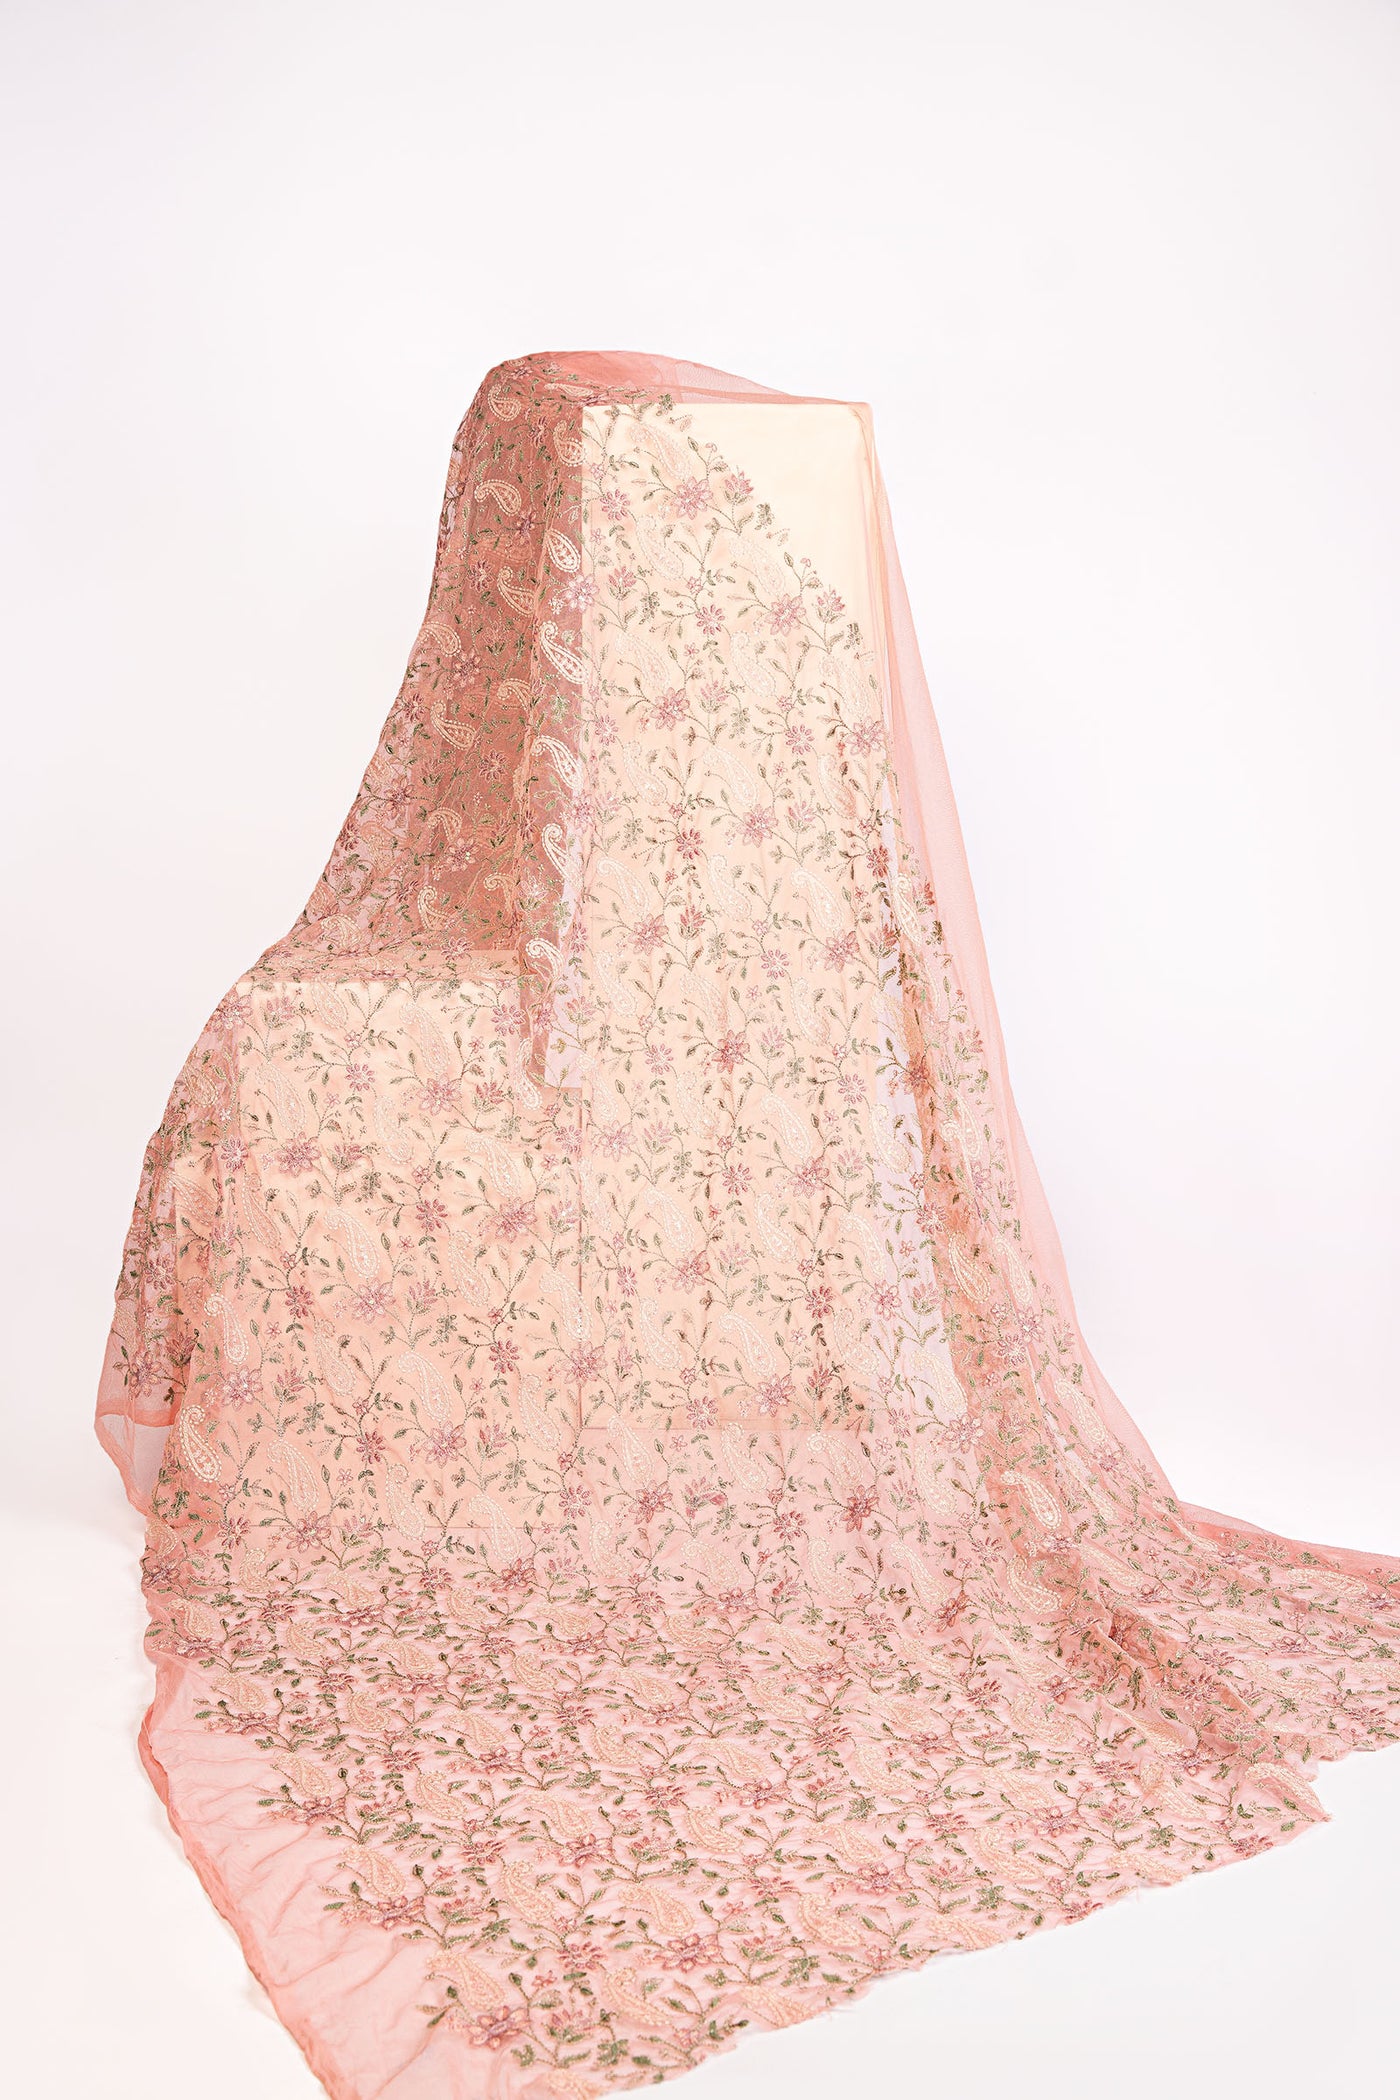 M.Luxe Fabrics LF-314-Pink